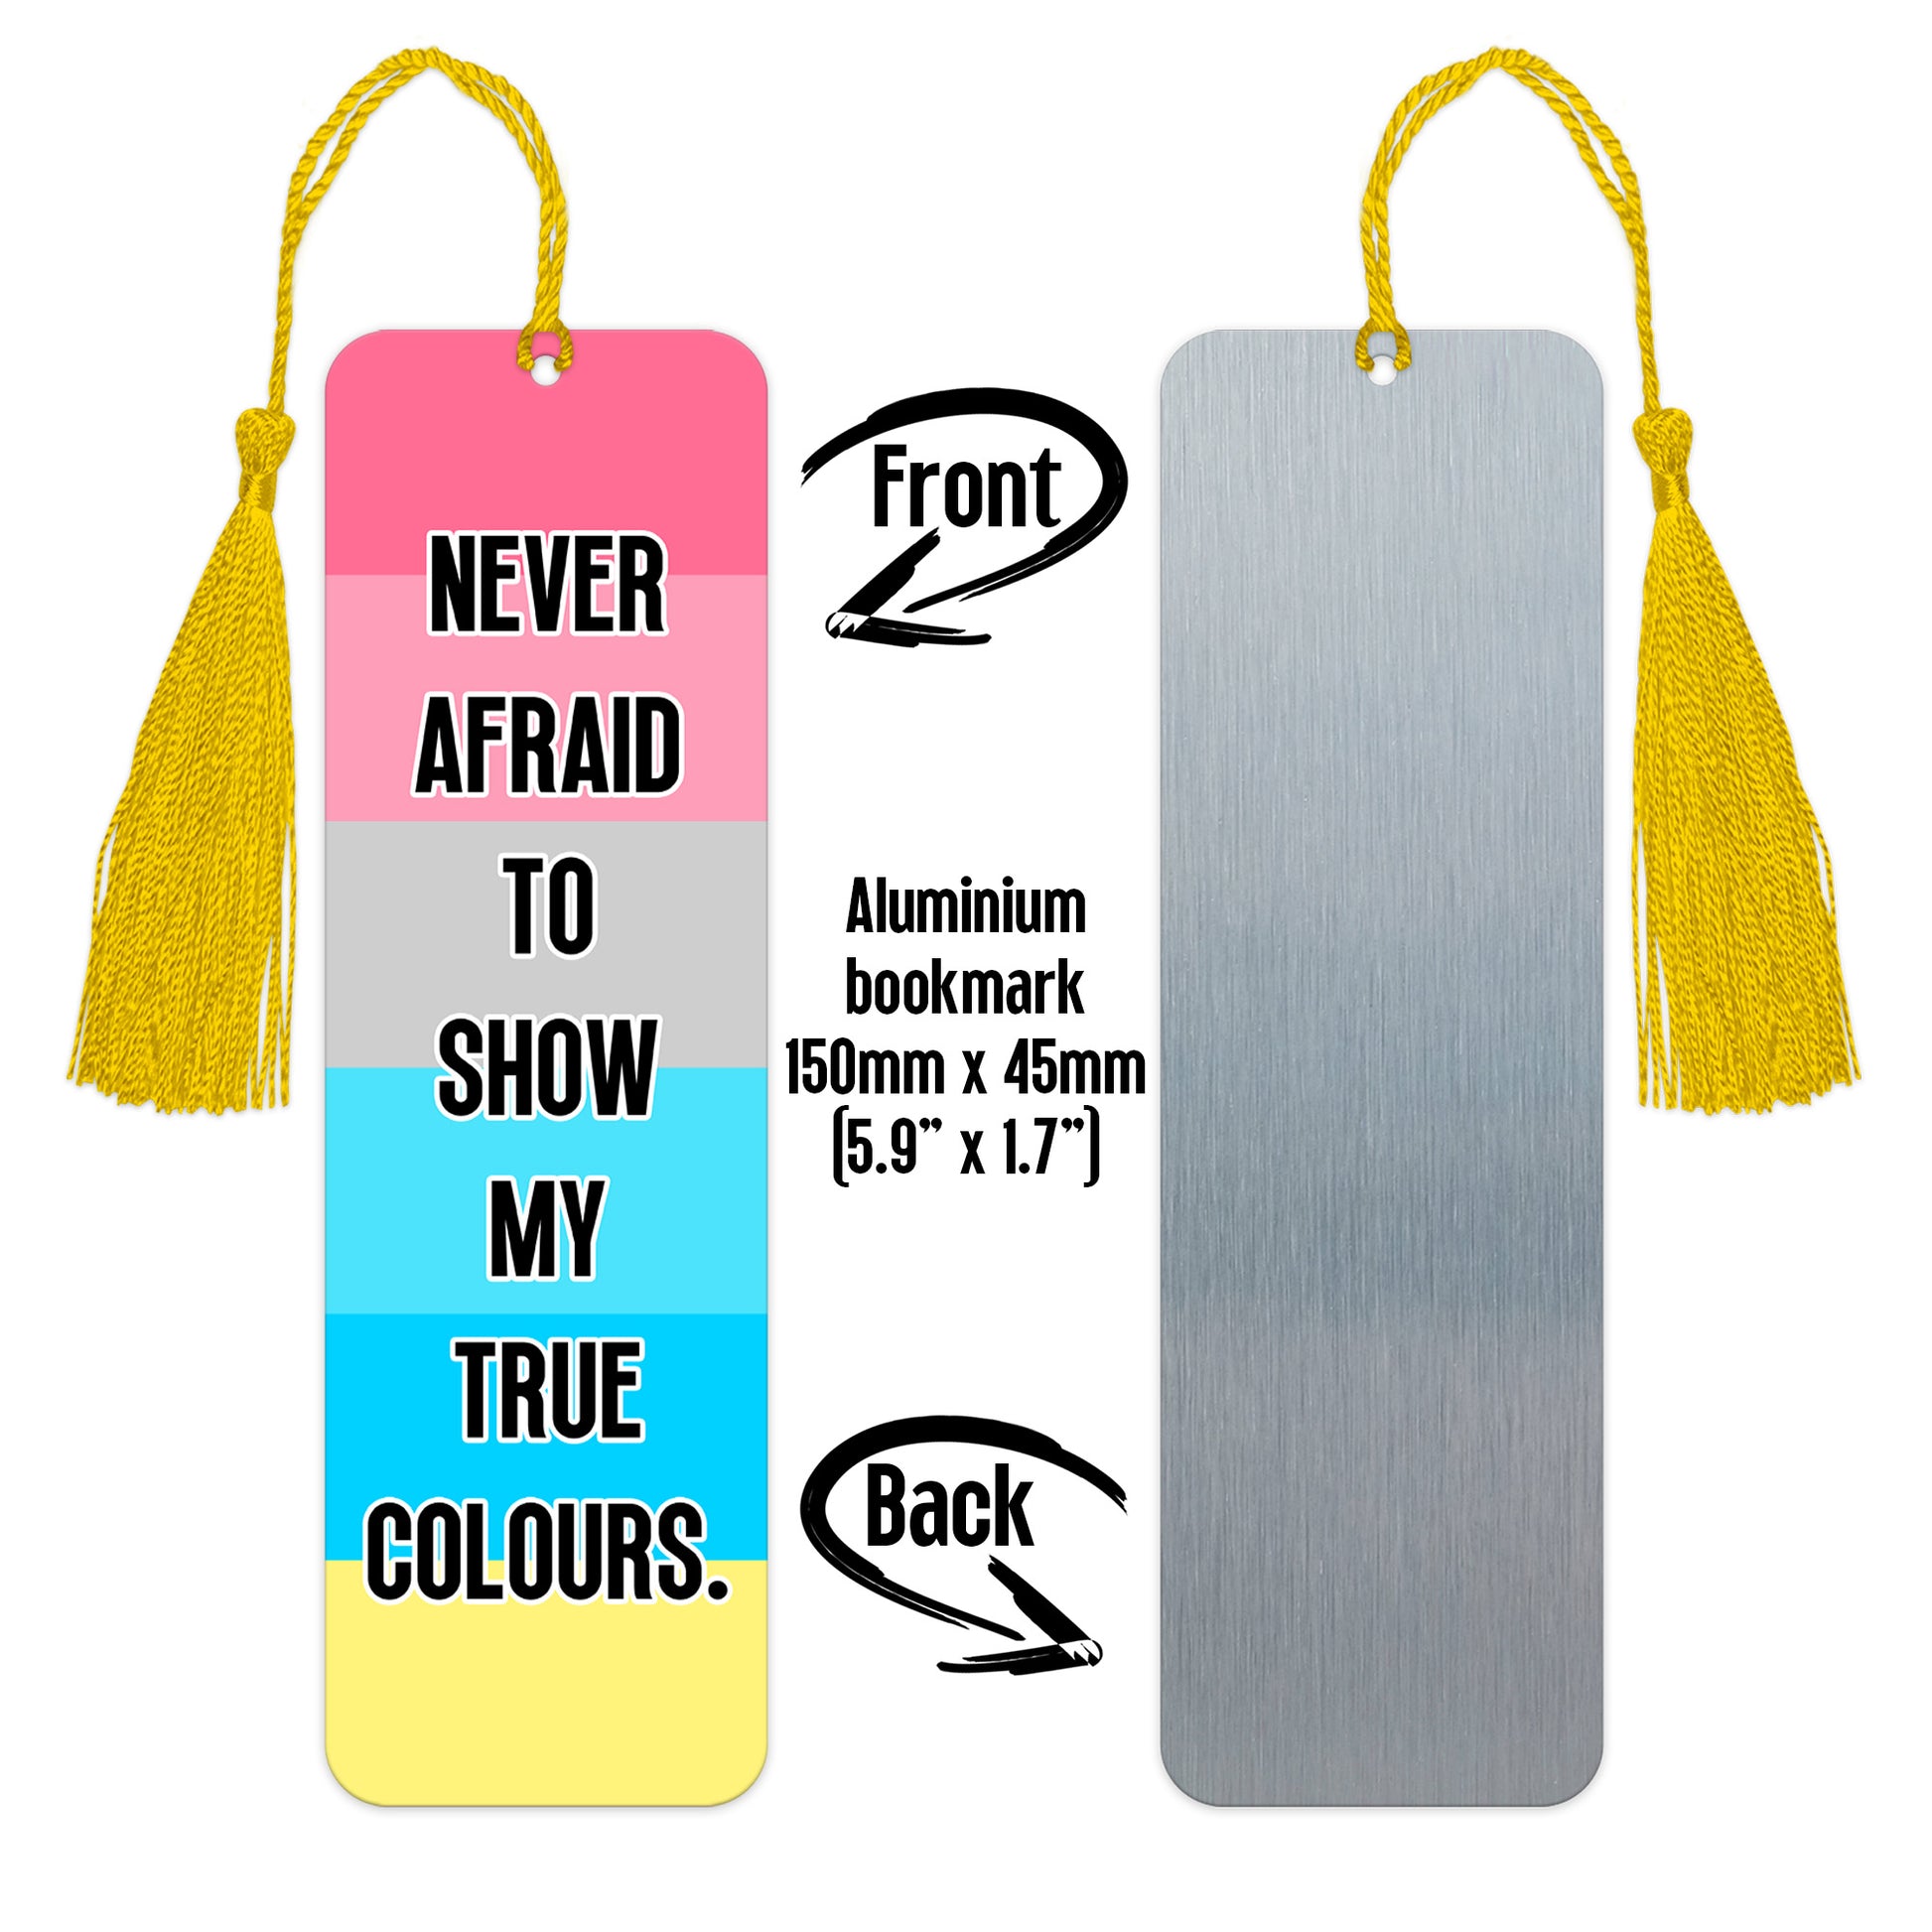 Genderflux pride luxury aluminium bookmark never afraid to show my true colours